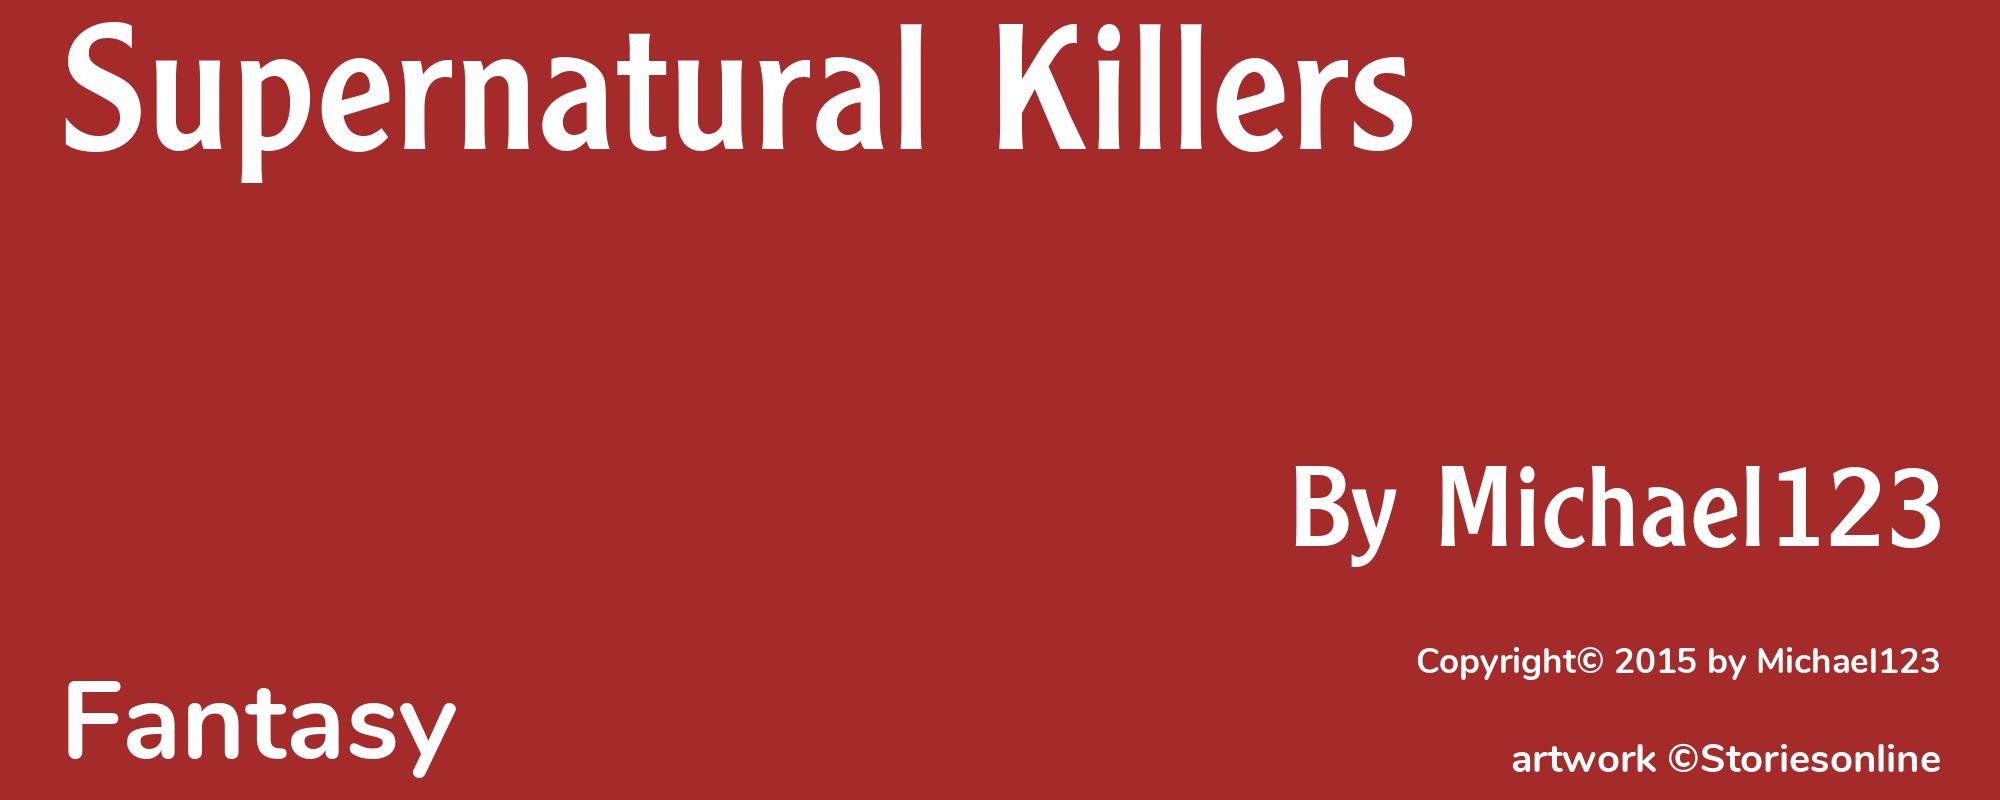 Supernatural Killers - Cover